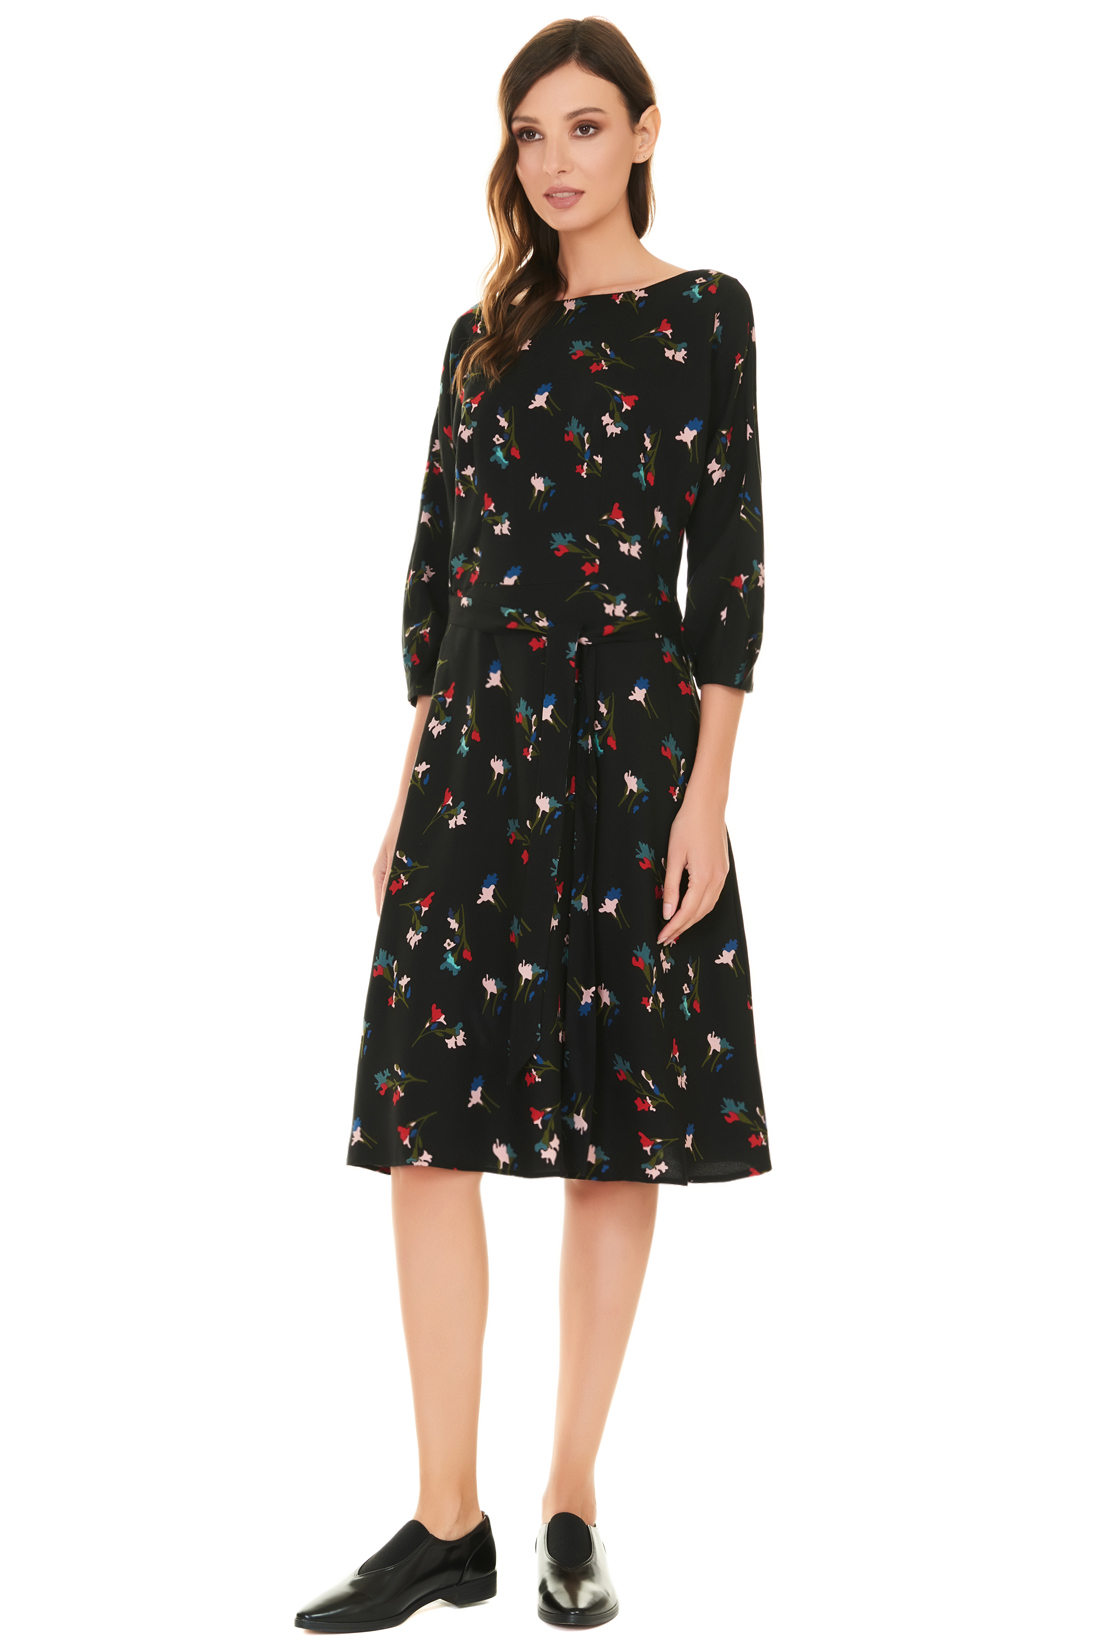 Платье с цельнокроенными рукавами и поясом (арт. baon B457504), размер XL, цвет черный Платье с цельнокроенными рукавами и поясом (арт. baon B457504) - фото 1